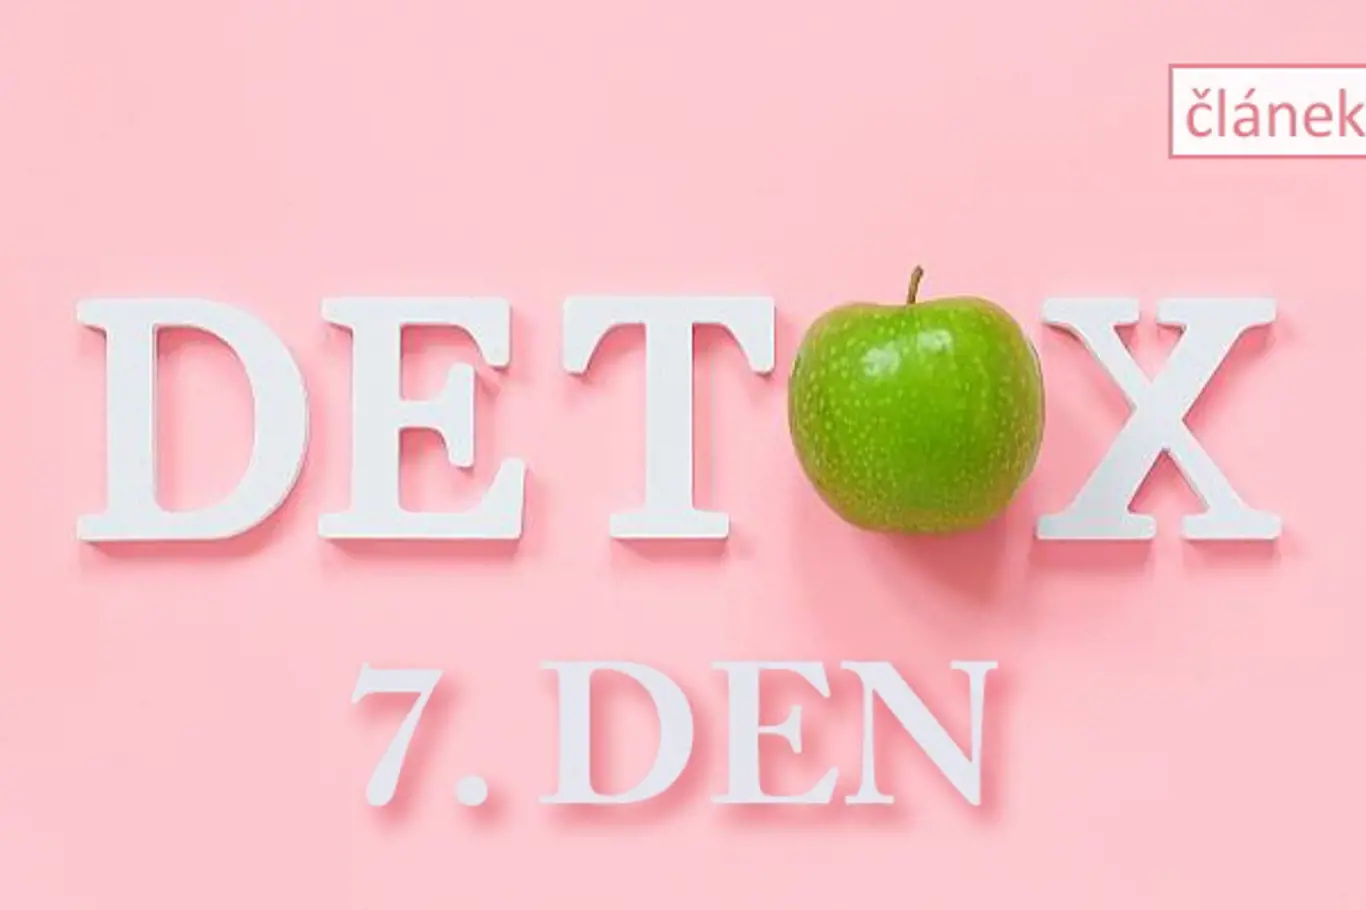 detox článek 7